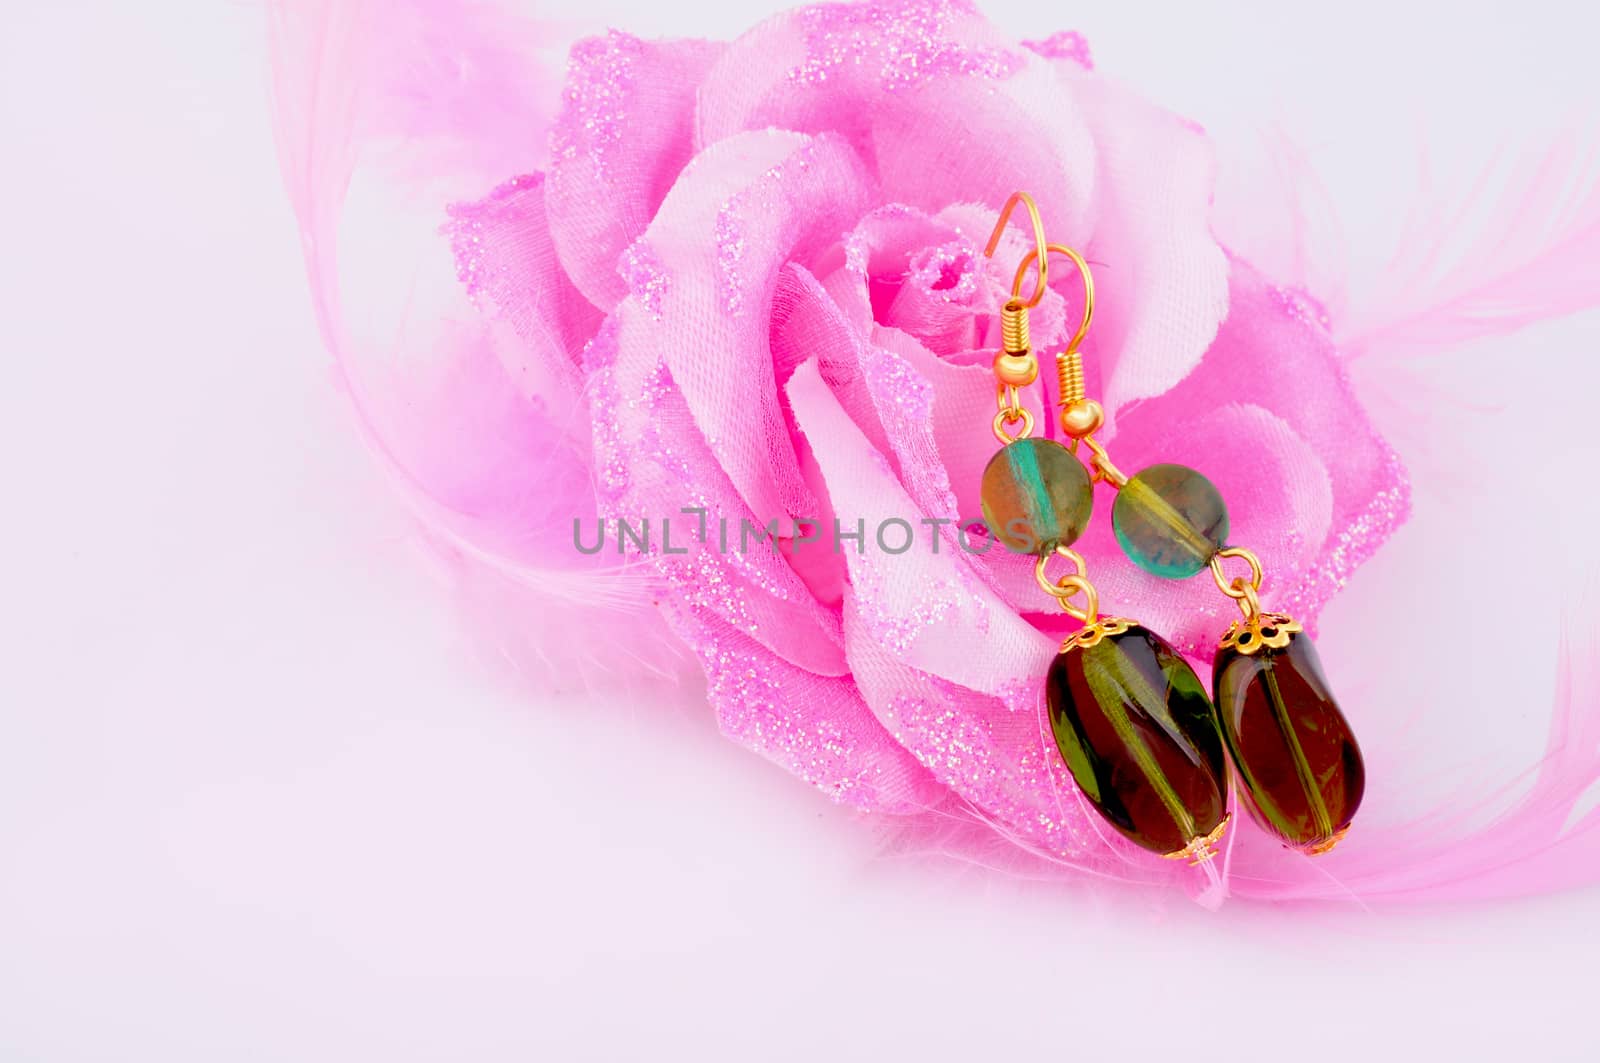 earring in pink rose by Nikola30